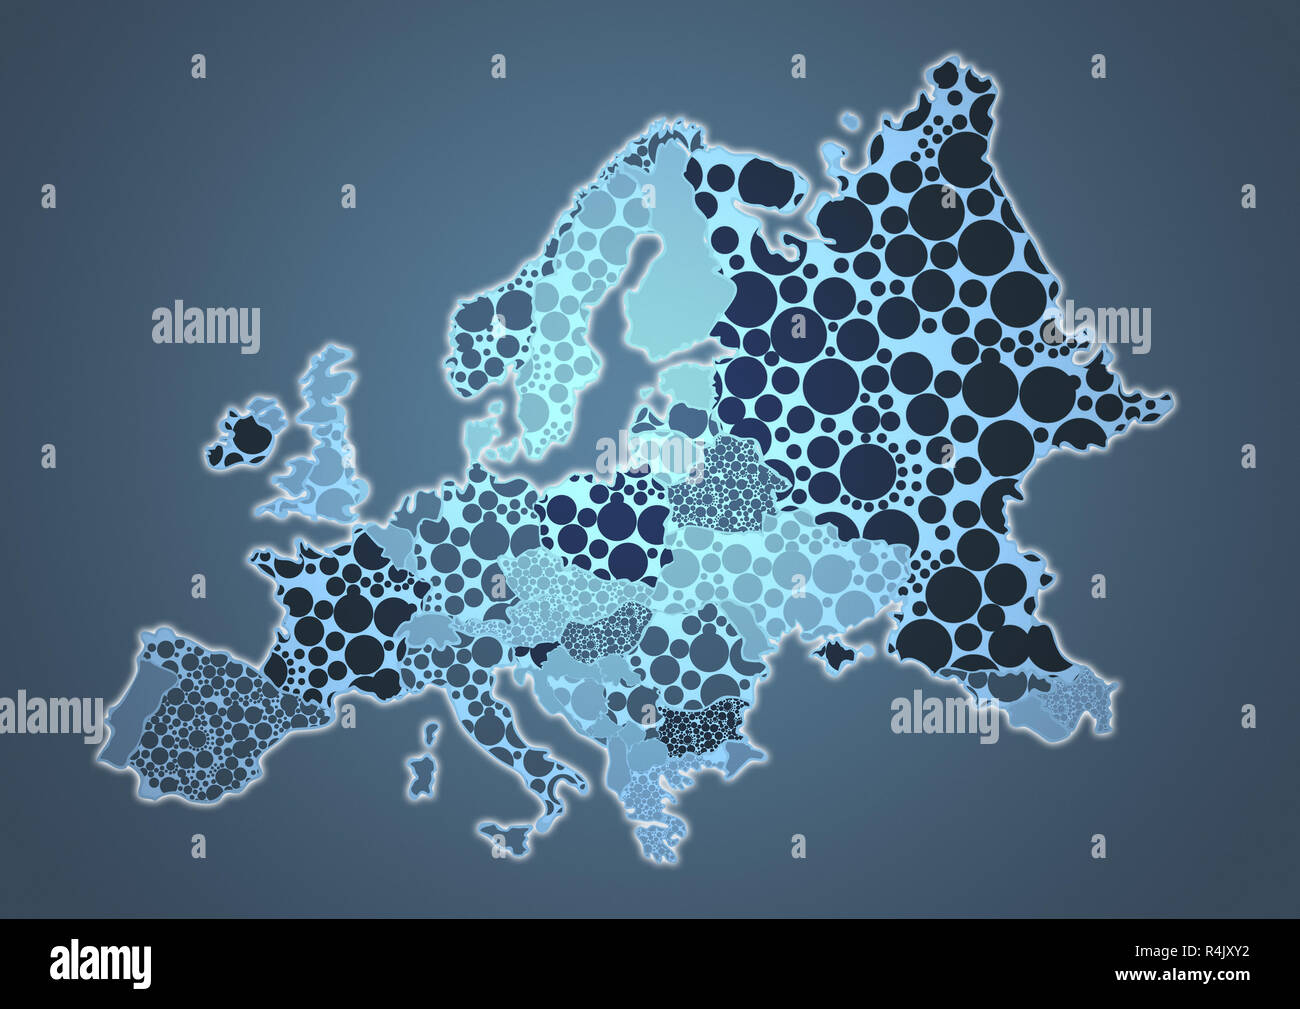 Farbkarte Land Europas Stockfoto